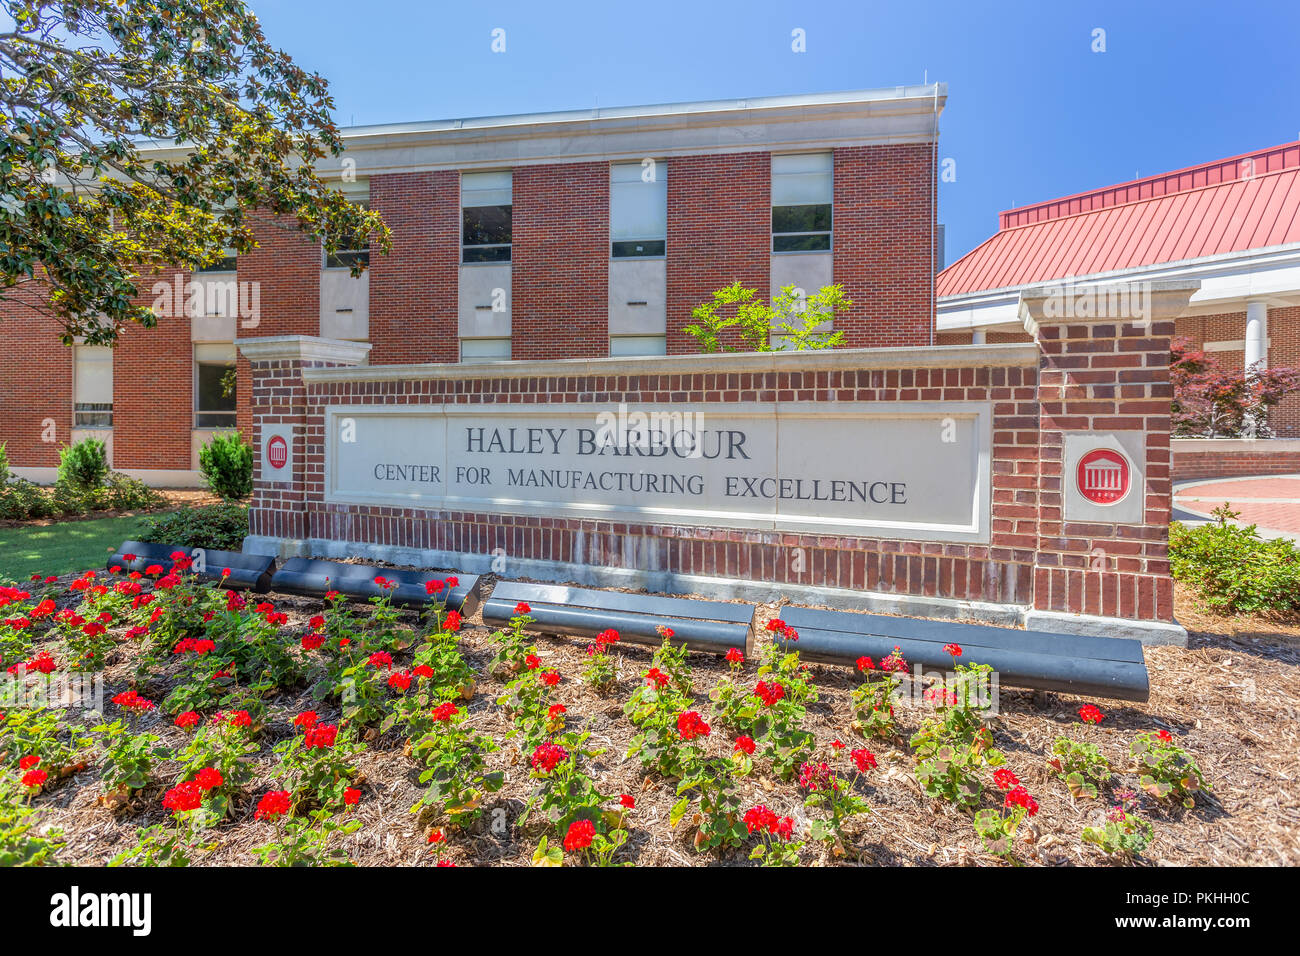 OXFORD, MS/USA - Juni 7, 2018: Haley Barbour Zentrum für hervorragende Leistungen in der Fertigung auf dem Campus der Universität von Mississippi. Stockfoto